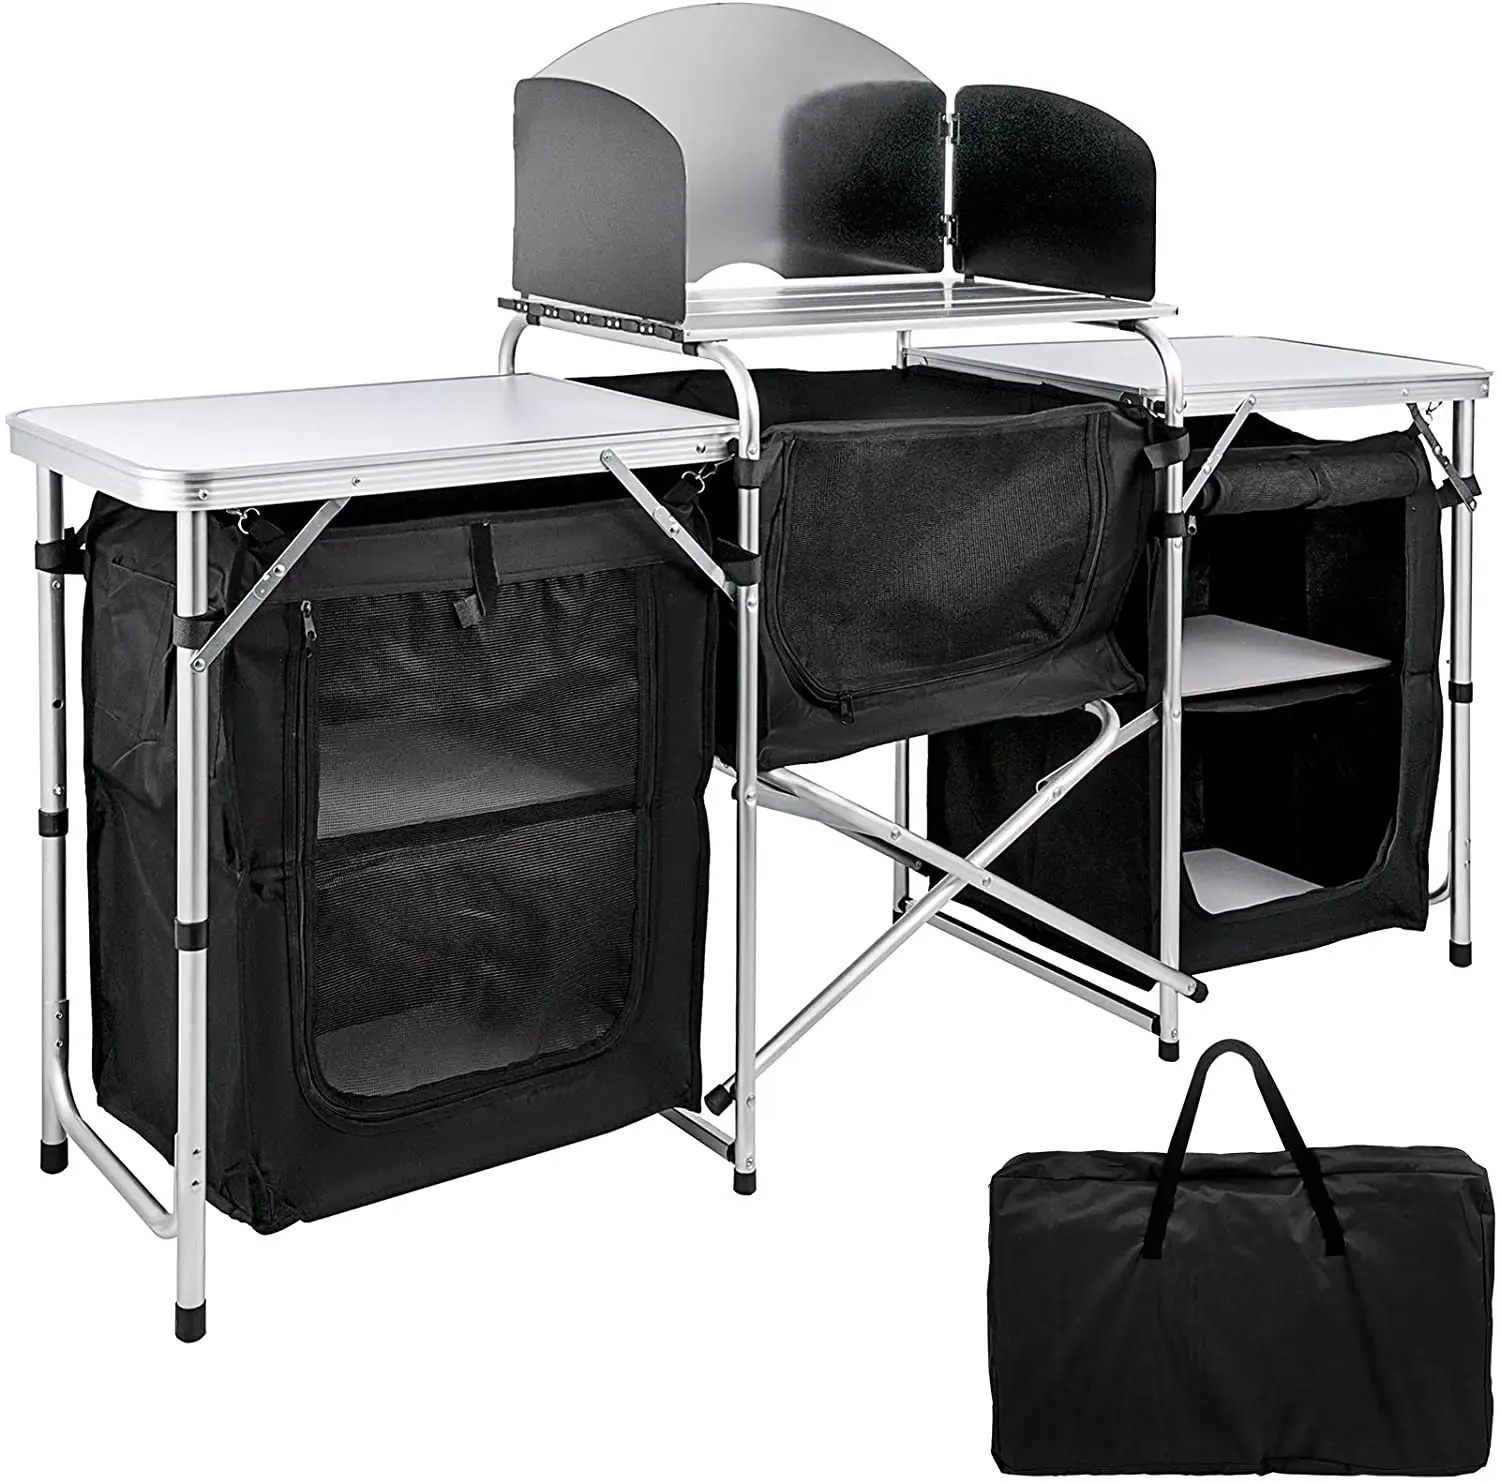 アウトドアアクティビティ2層テーブル2サイド3ジッパー式ポータブルキャンプキッチン家具バッグキャンプキッチンテーブル